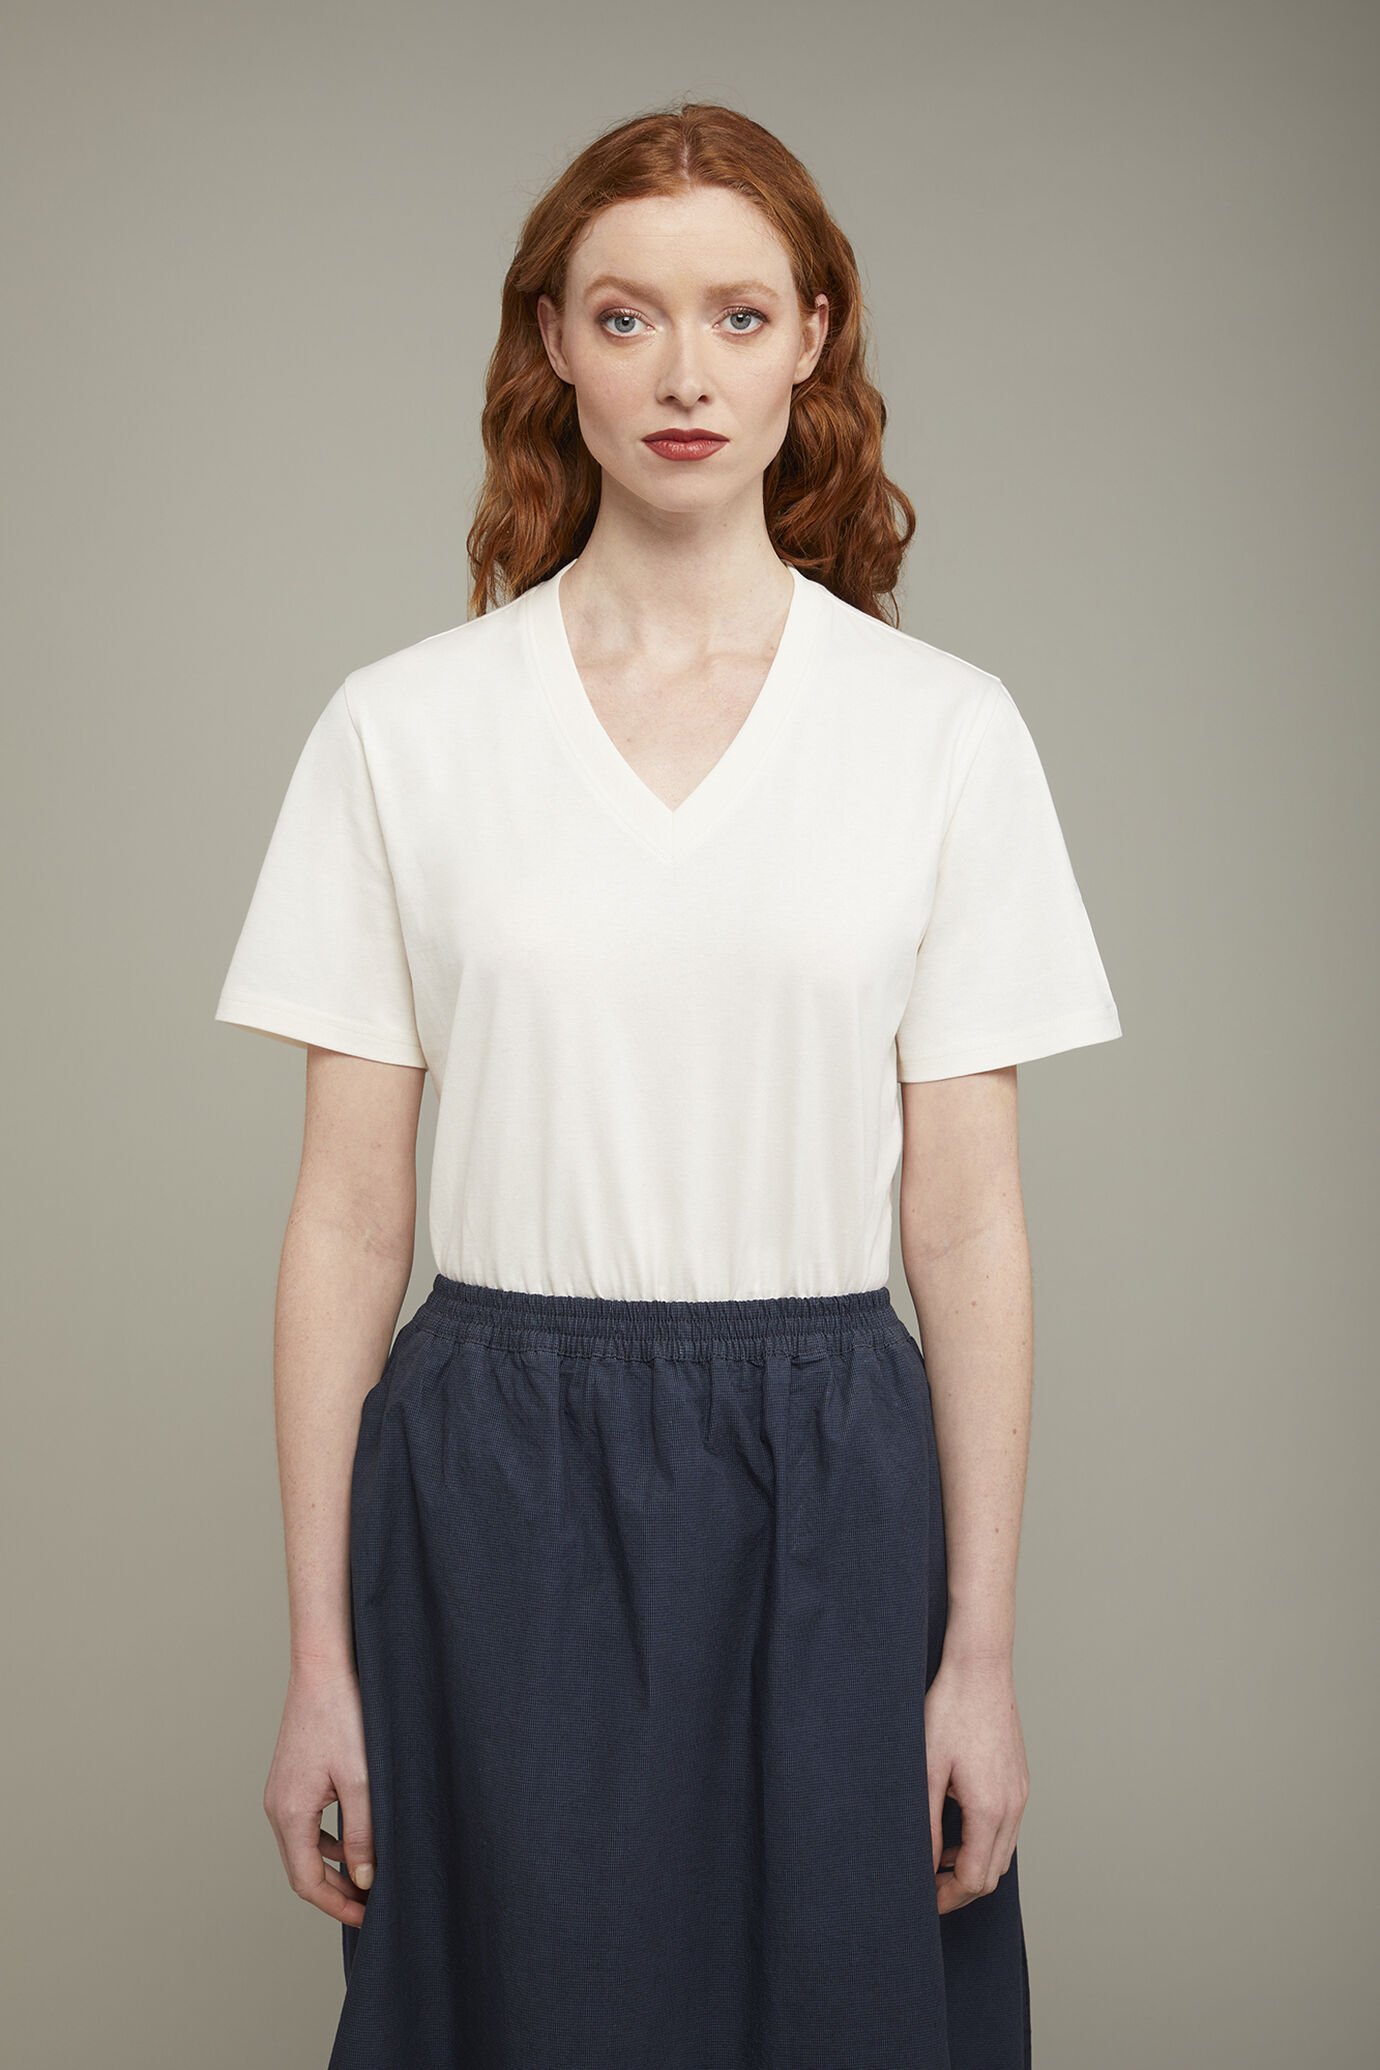 Damen-T-Shirt mit V-Ausschnitt aus 100 % Baumwolle in normaler Passform